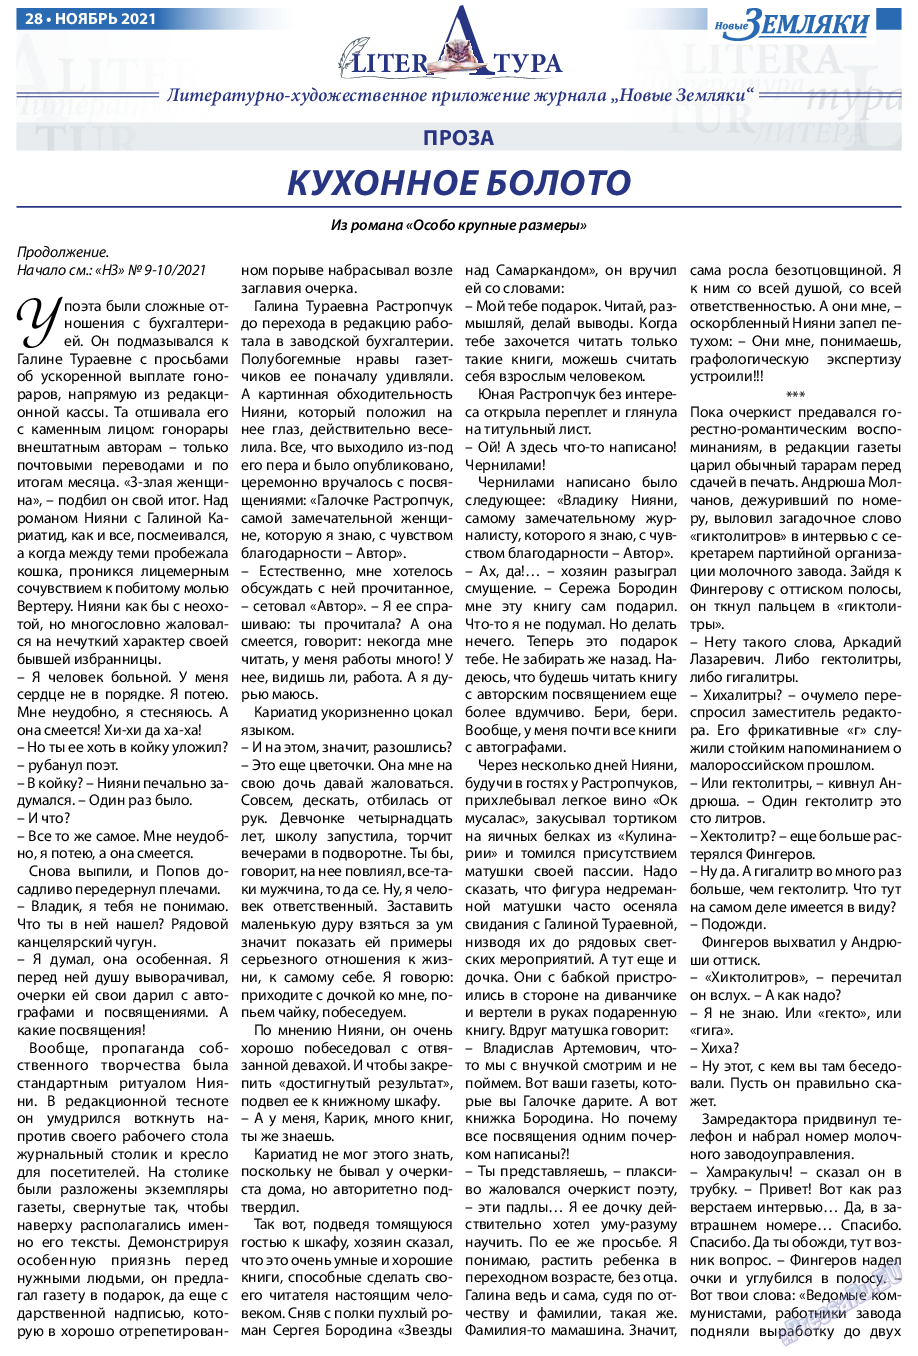 Новые Земляки, газета. 2021 №11 стр.28